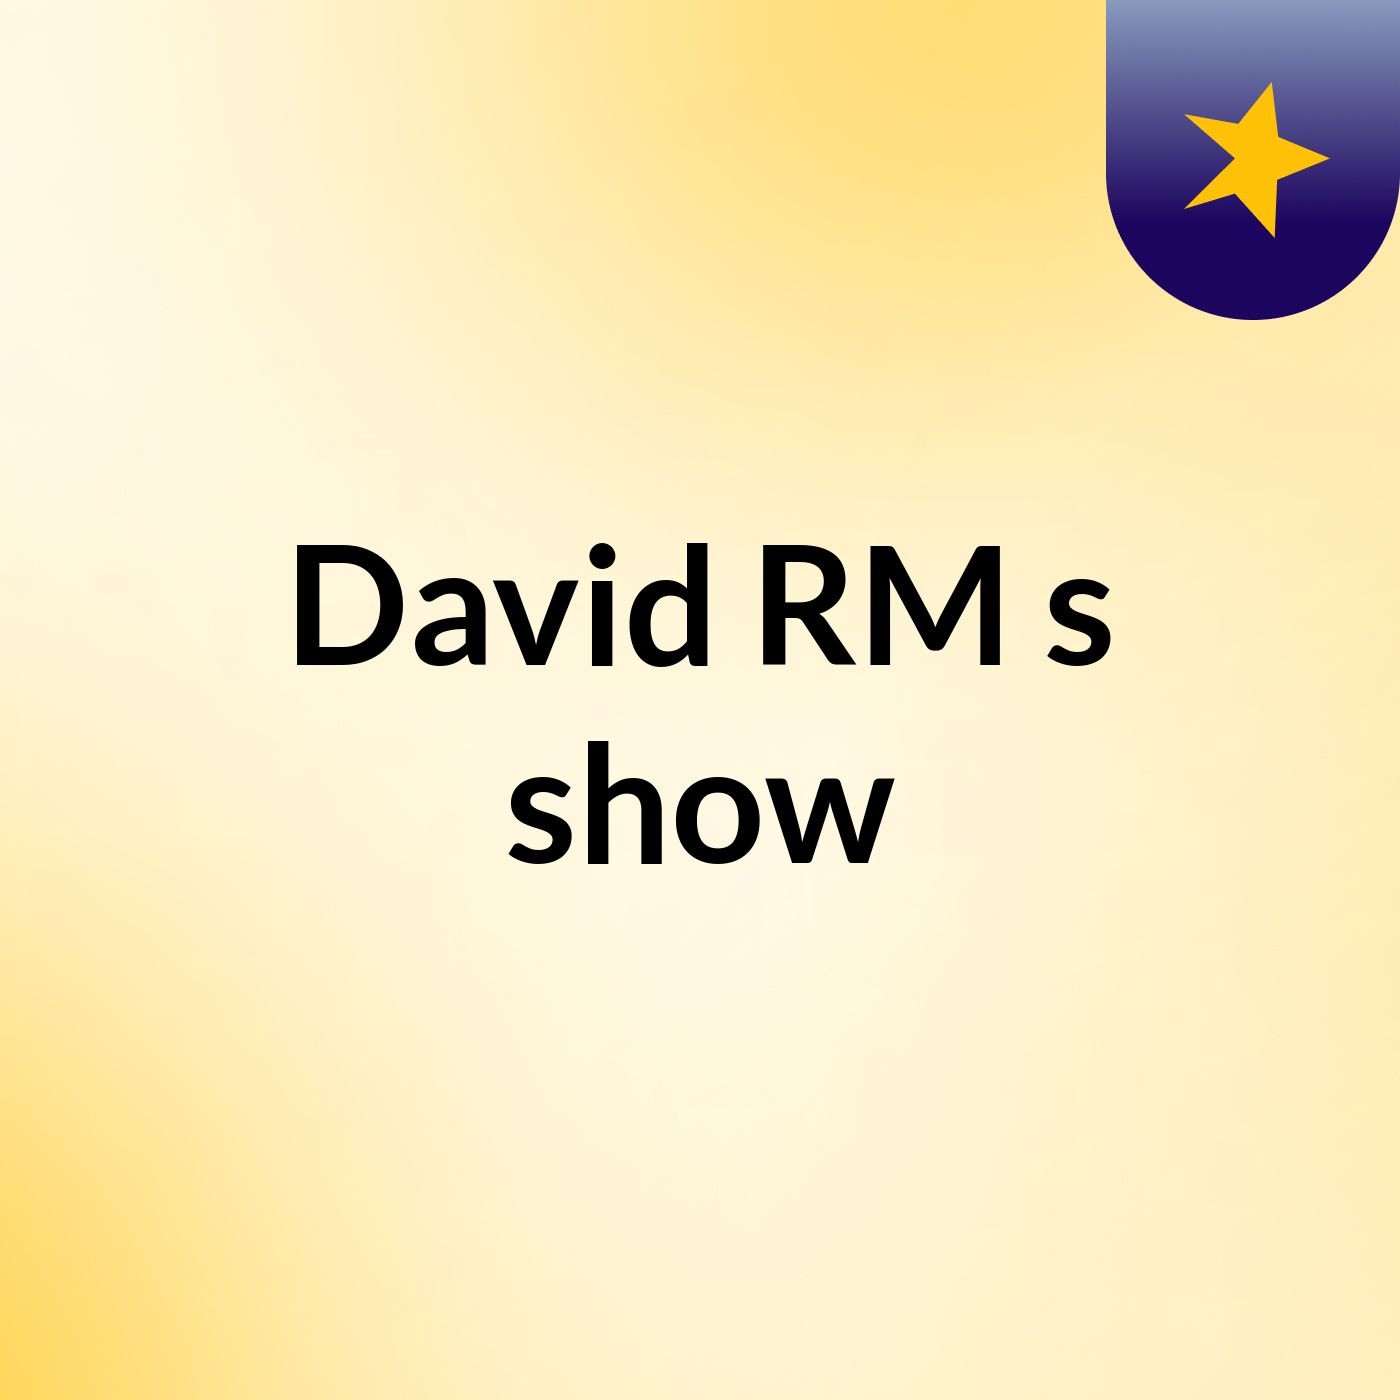 David RM's show